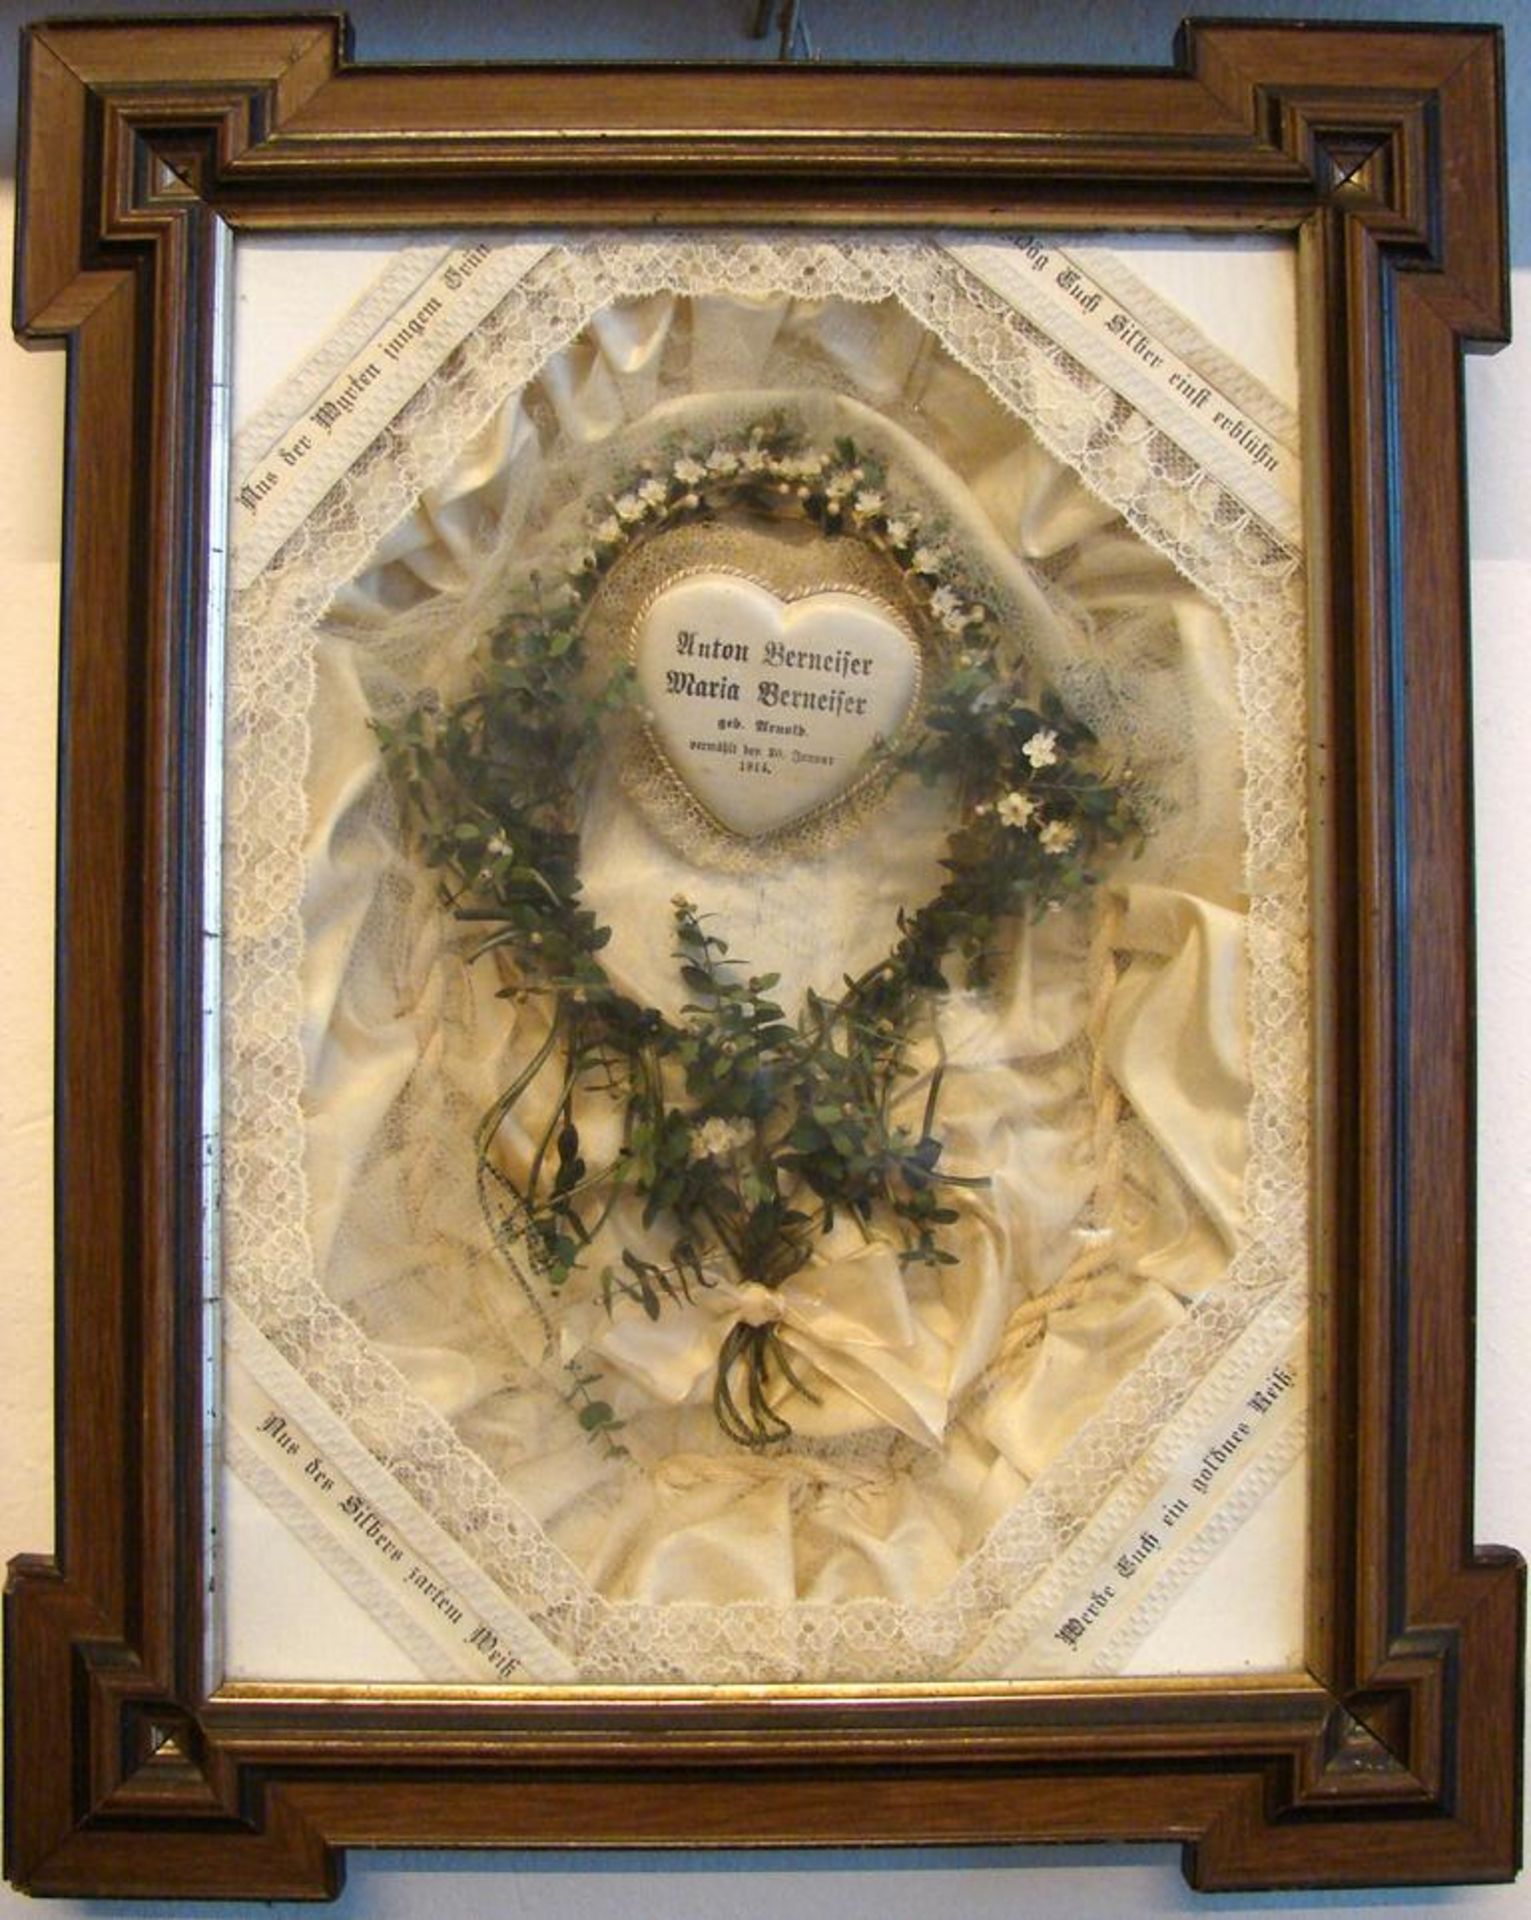 Klosterarbeit, Hochzeitsbild, datiert 20.1.1914, Holzrahmen, ca. 50 x 41 cm- - -22.00 % buyer's